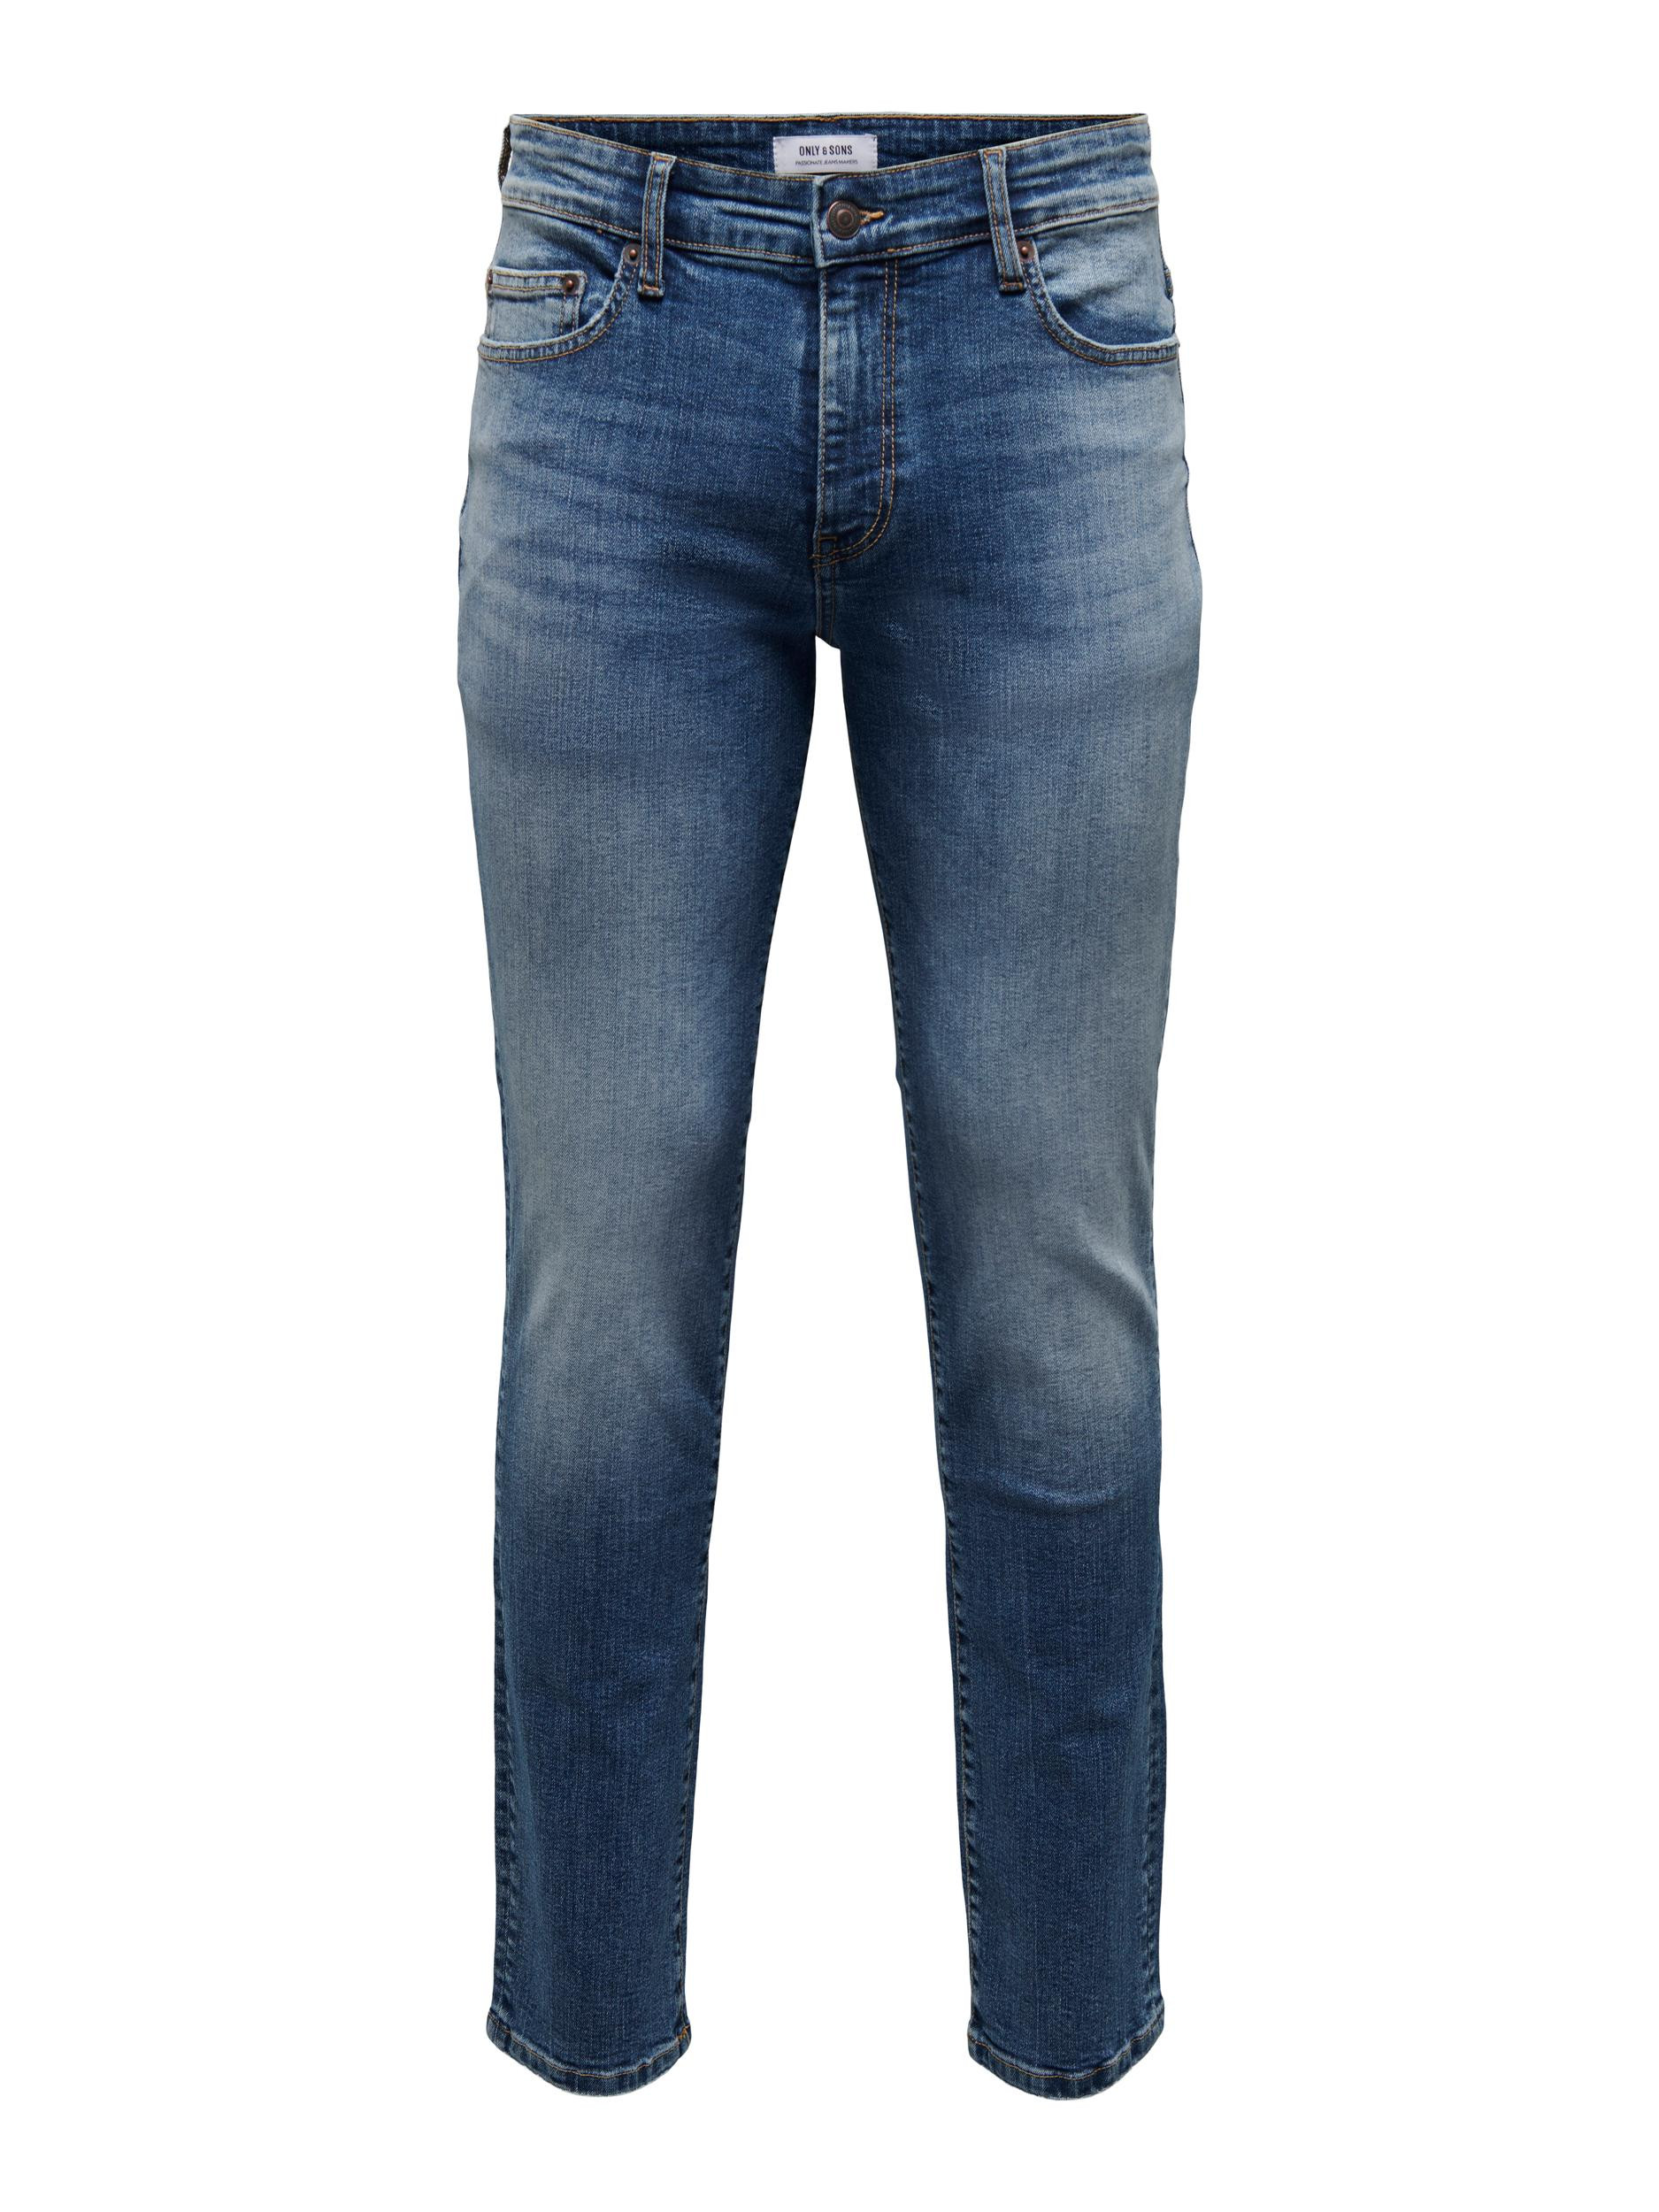 Afbeelding van Only & Sons Onsloom slim medium blue 6466 jeans